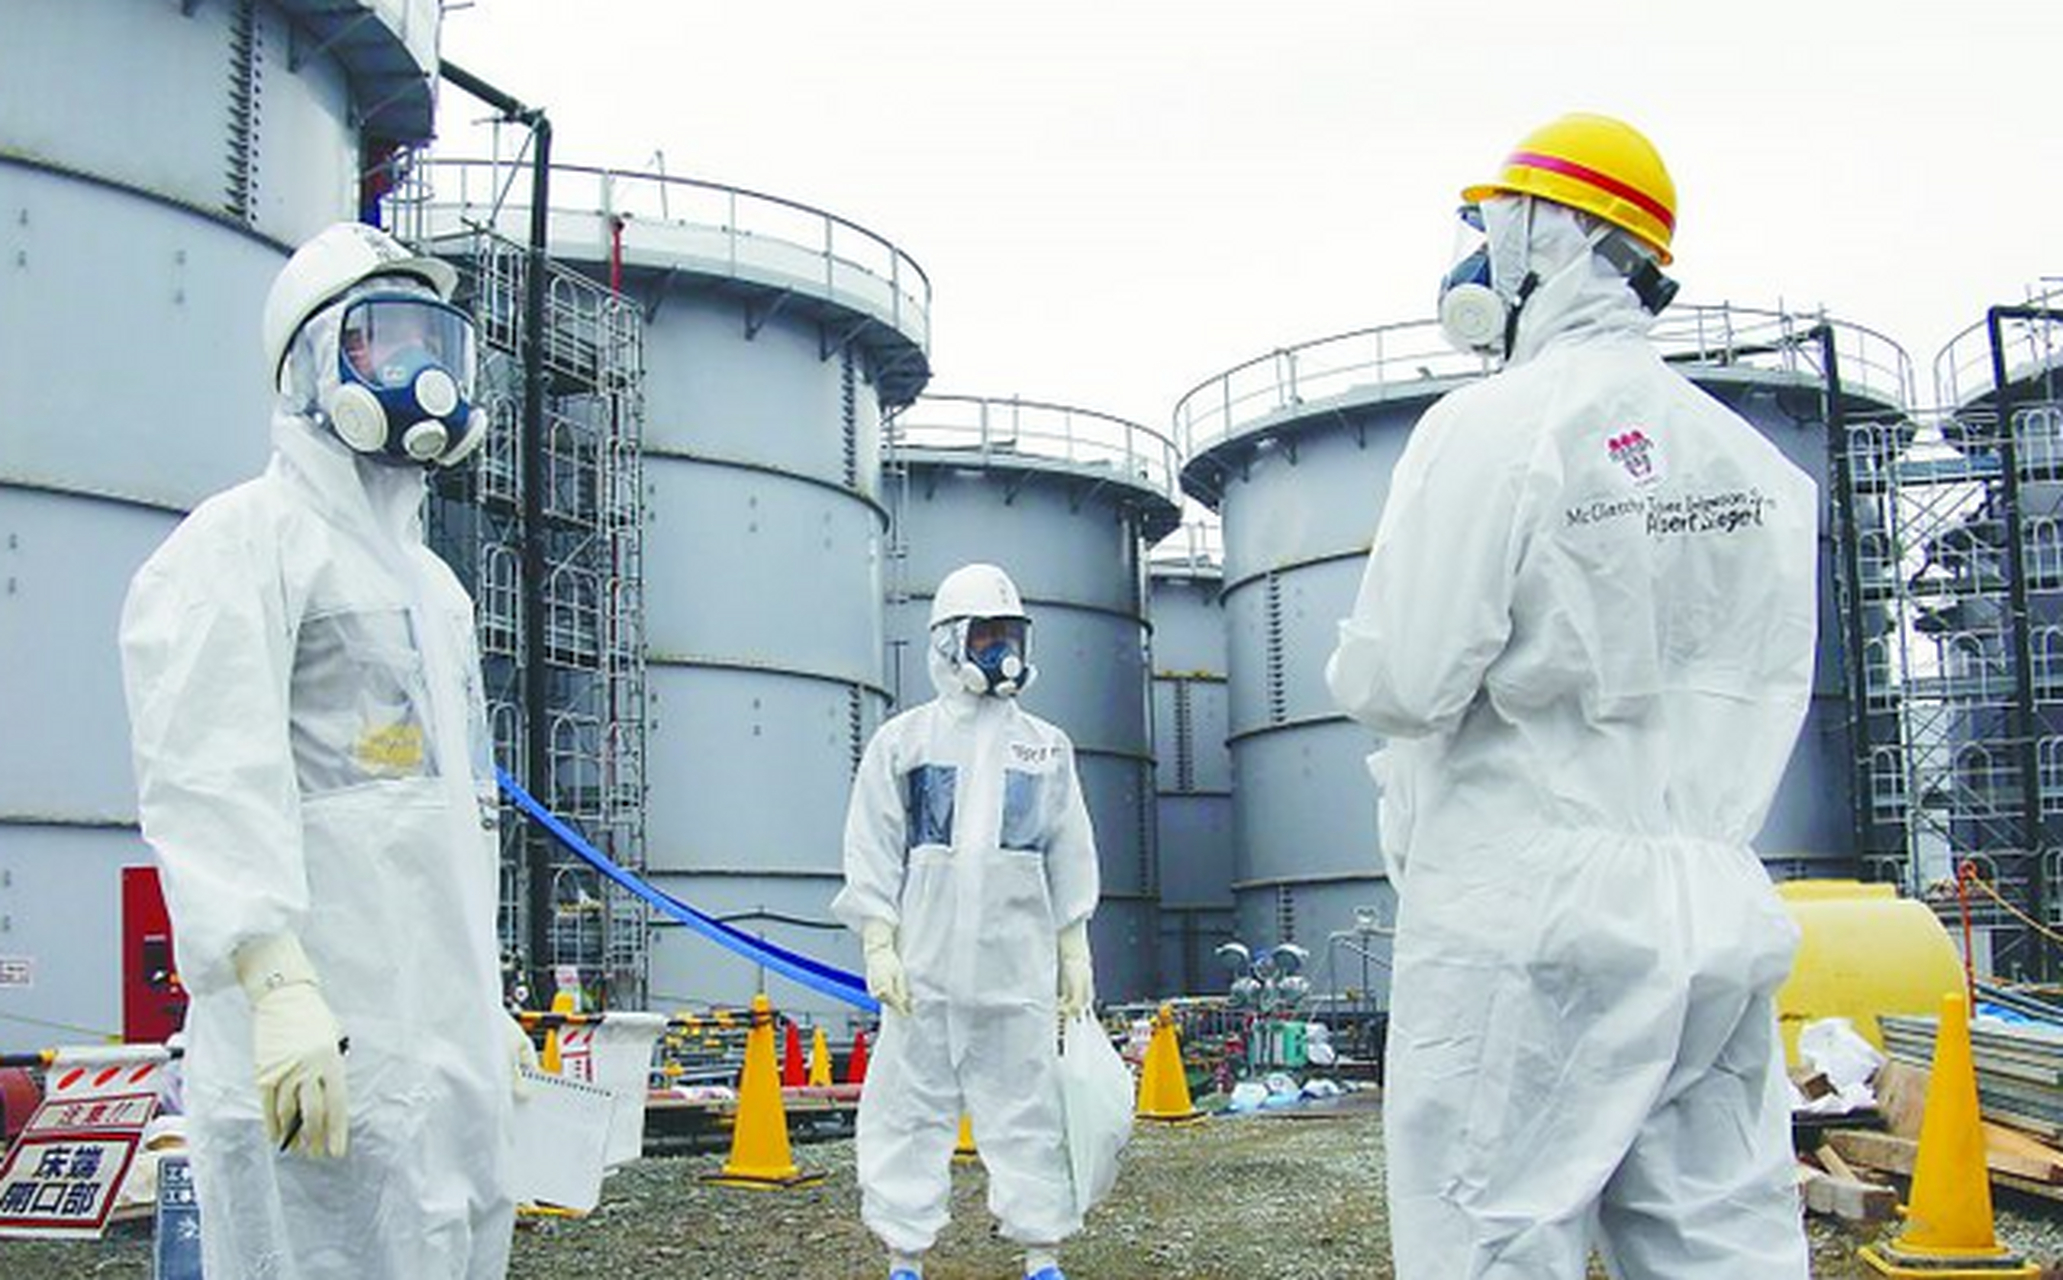 日本排放福岛核污染水